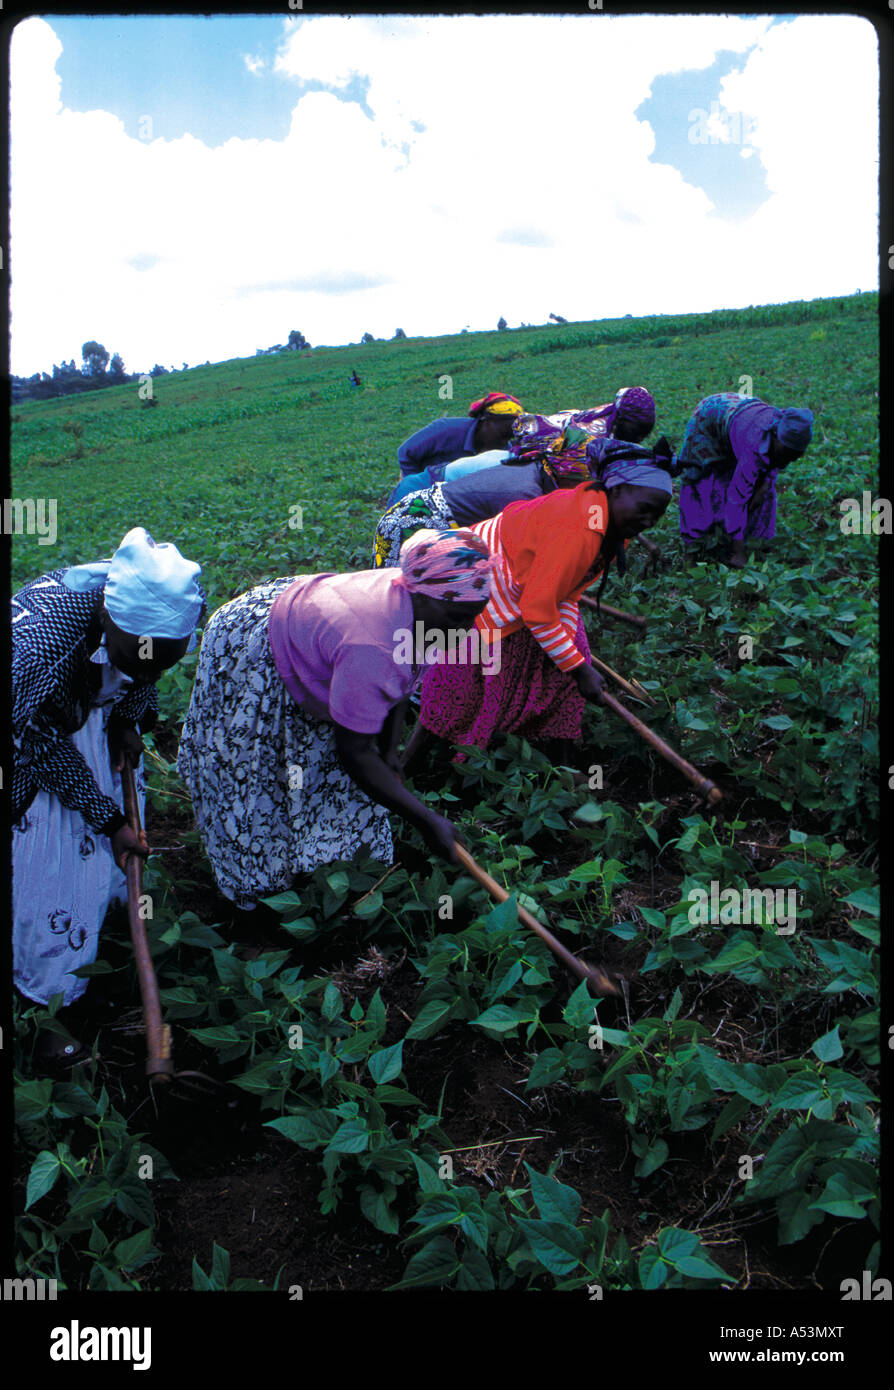 Painet ha1472 couleur 3003 de la coopérative agricole des femmes kukuyu terrain au pays en développement, de pays moins développés économiquement Banque D'Images